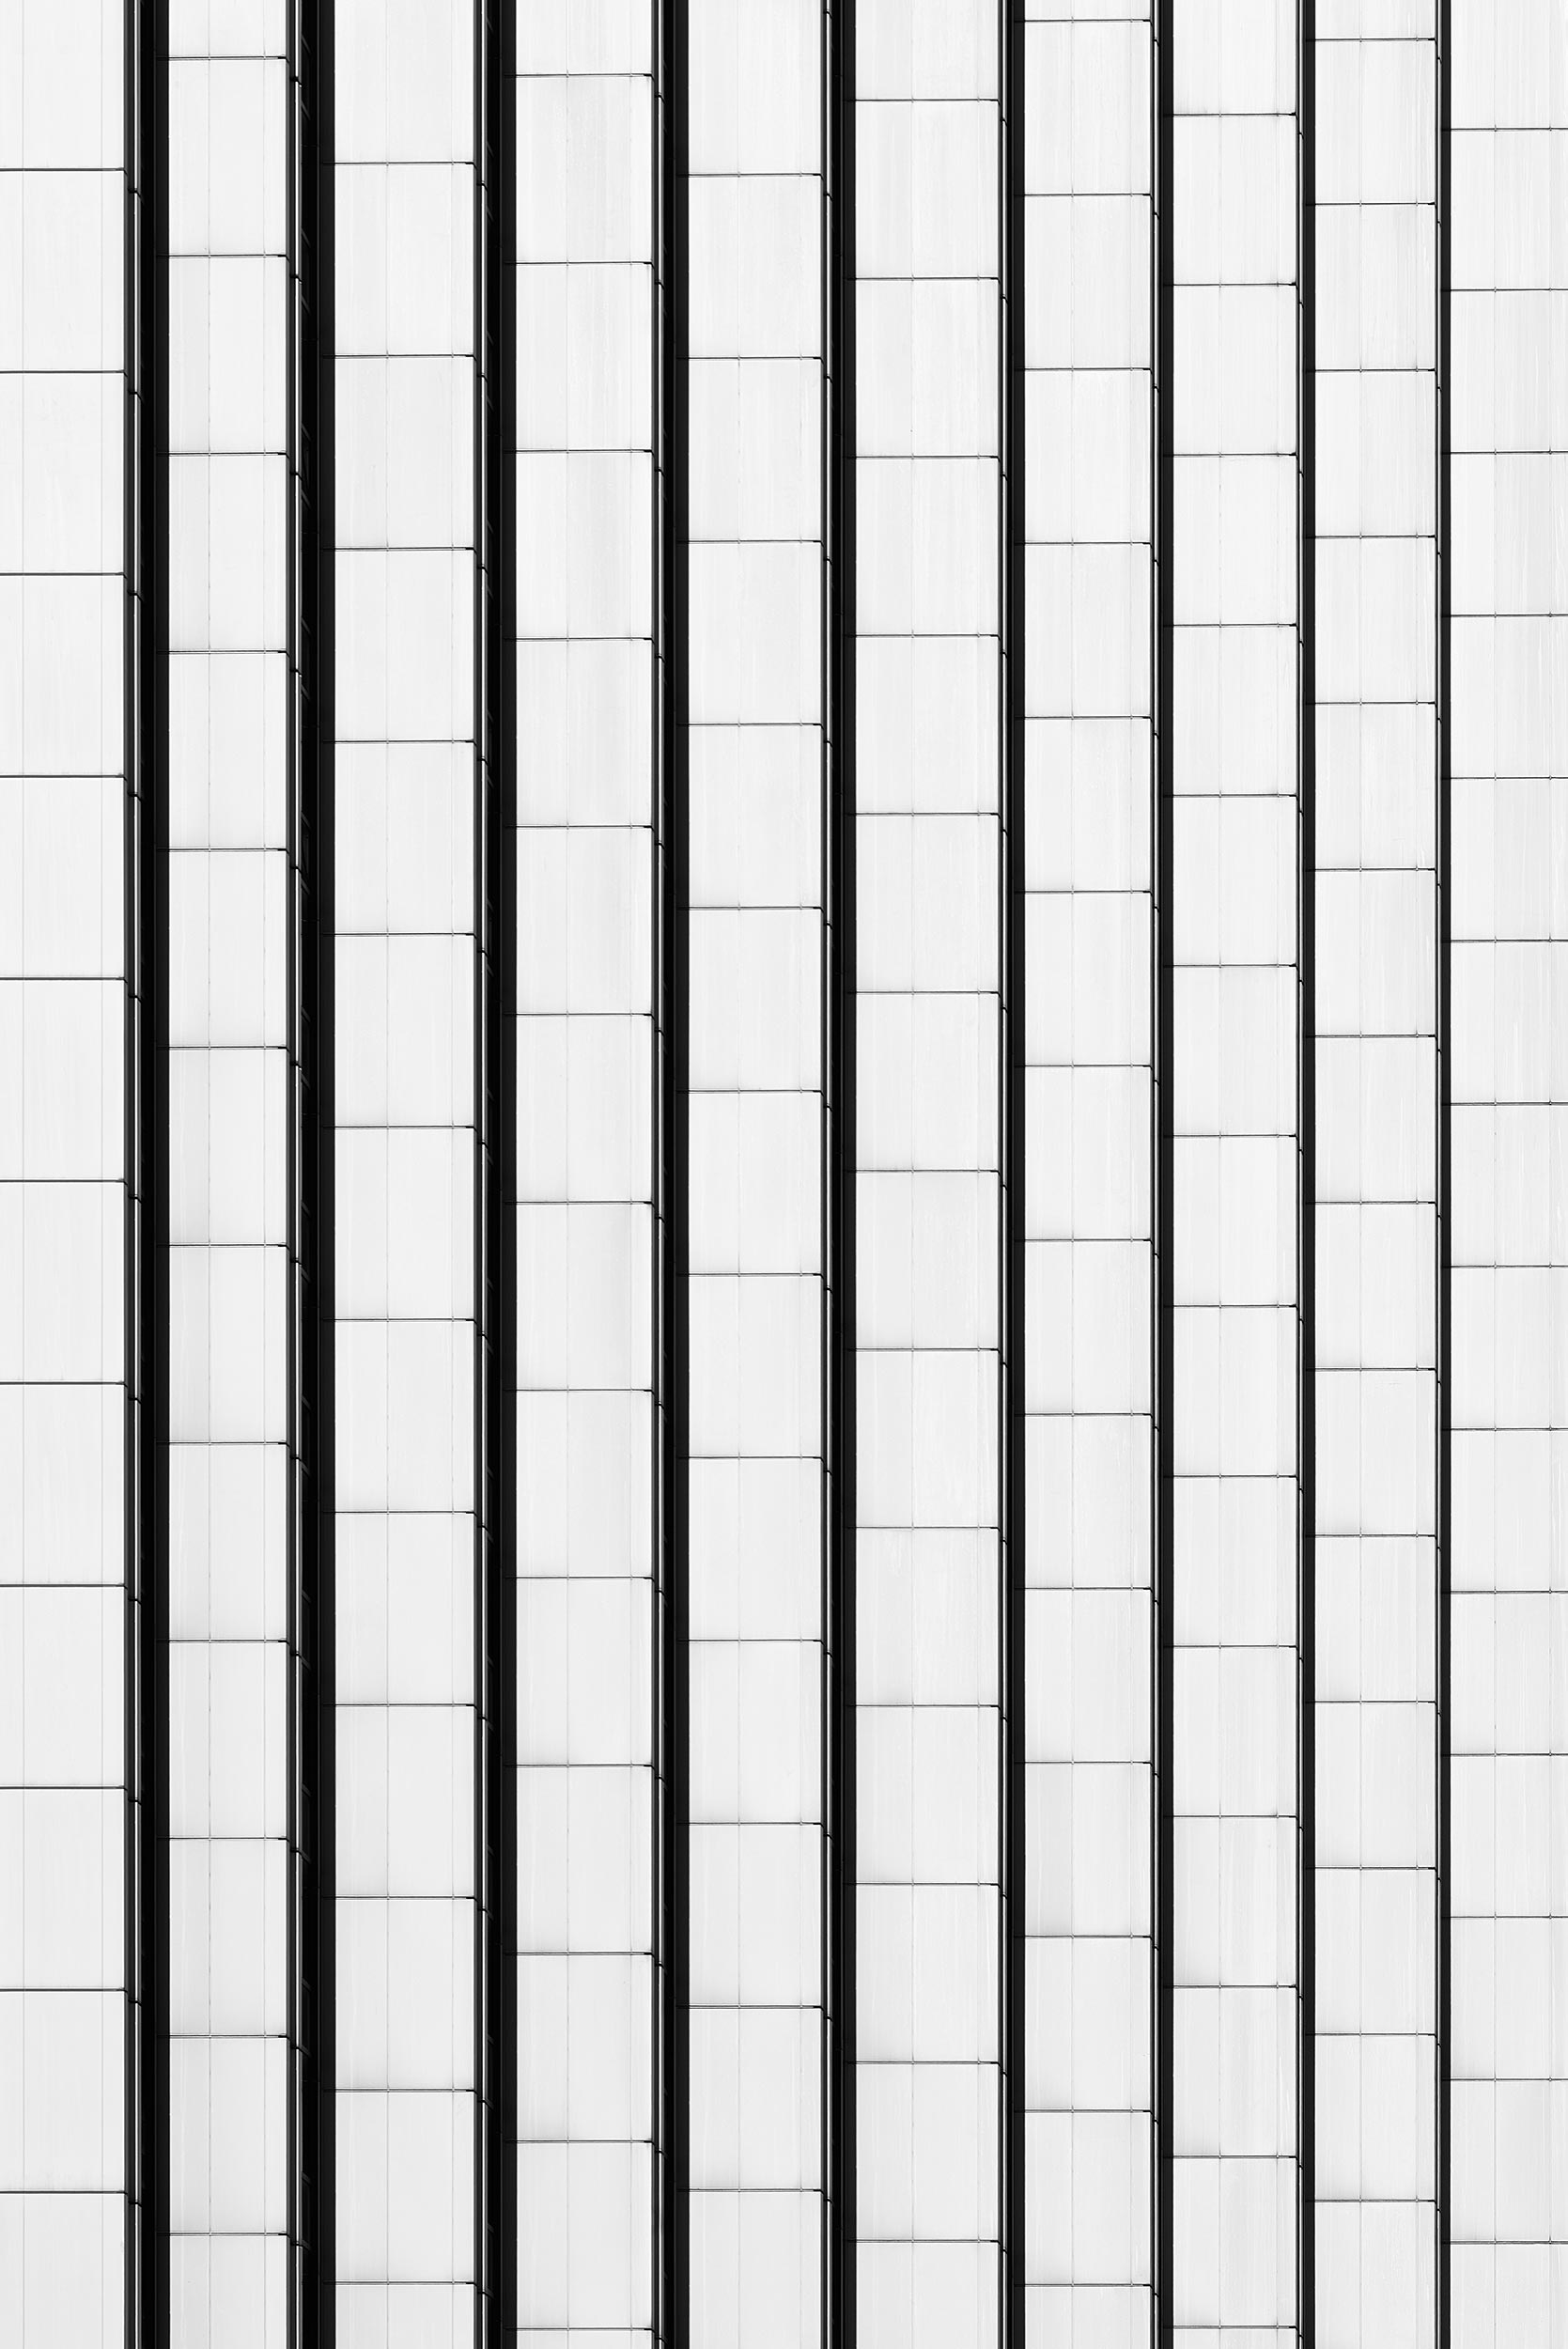 Dorint Congress Hotel, Chemnitz - Rudolf Weißer - Black & White Fine Art Architecture Photography